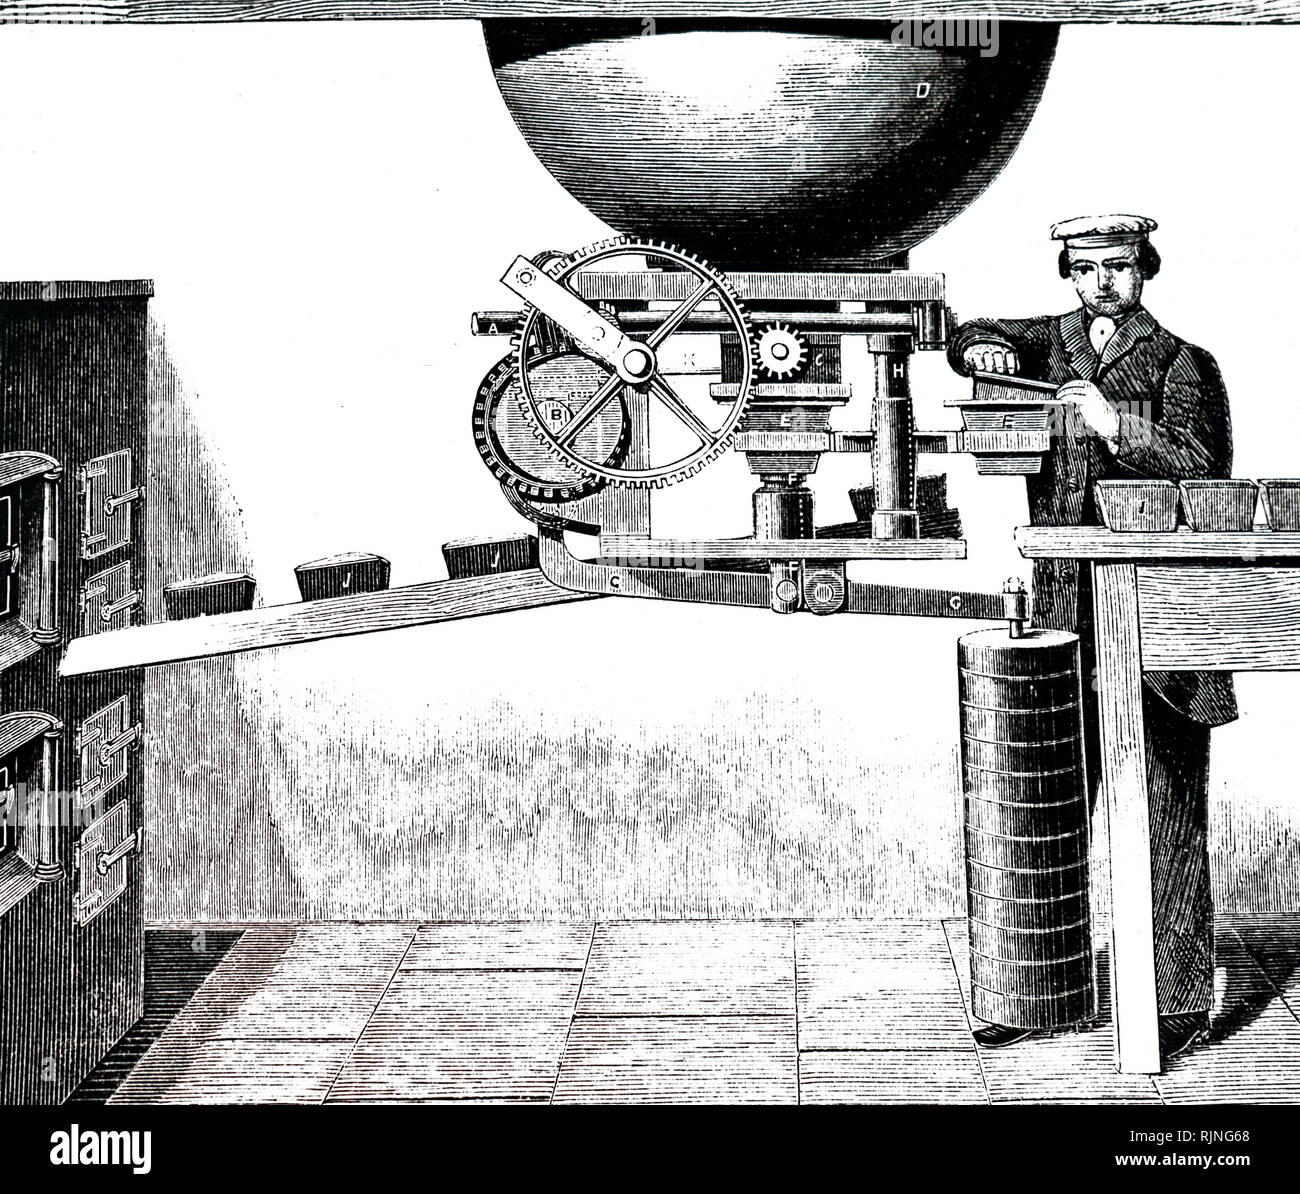 Une gravure illustrant une boulangerie à l'aide de la fabrication du pain Dalglish aérés de machines. En date du 19e siècle Banque D'Images